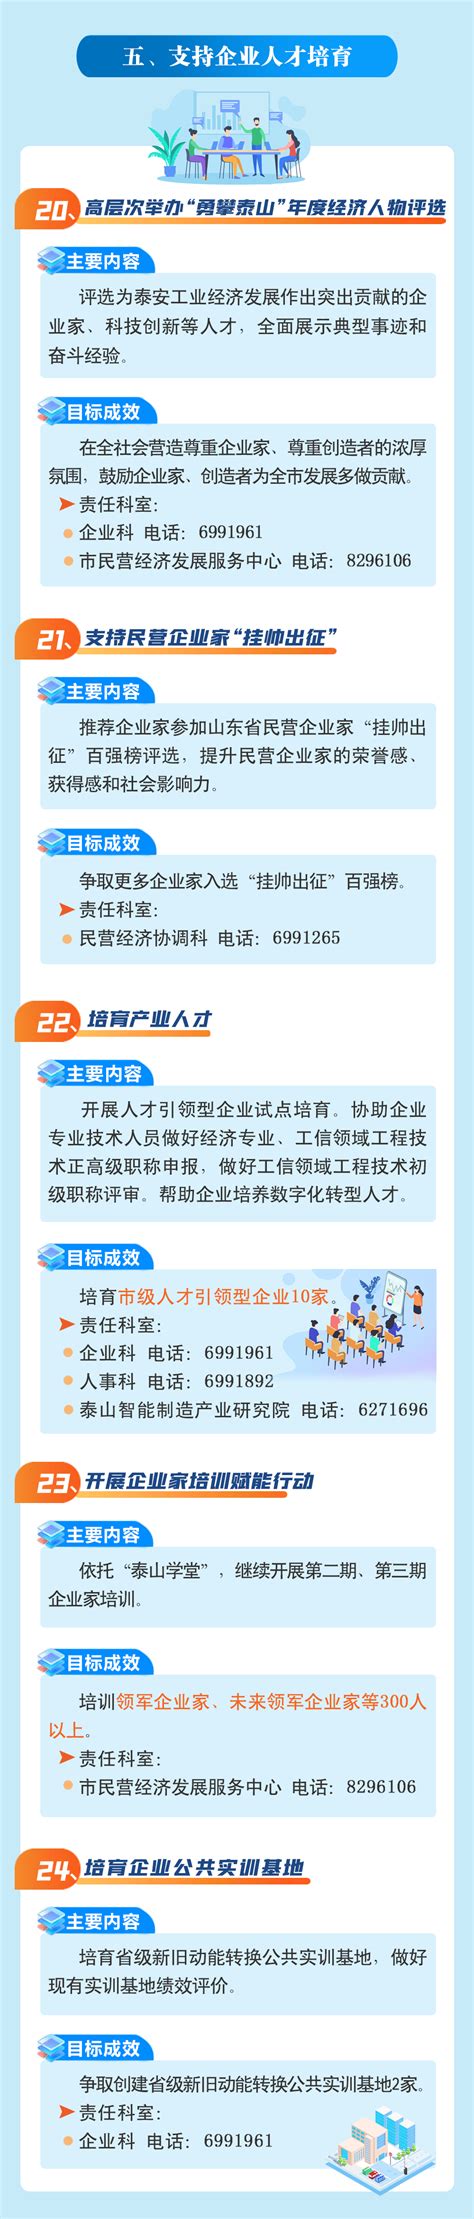 泰安市10强企业名单排行榜-泰开上榜(山东慈善企业)-排行榜123网